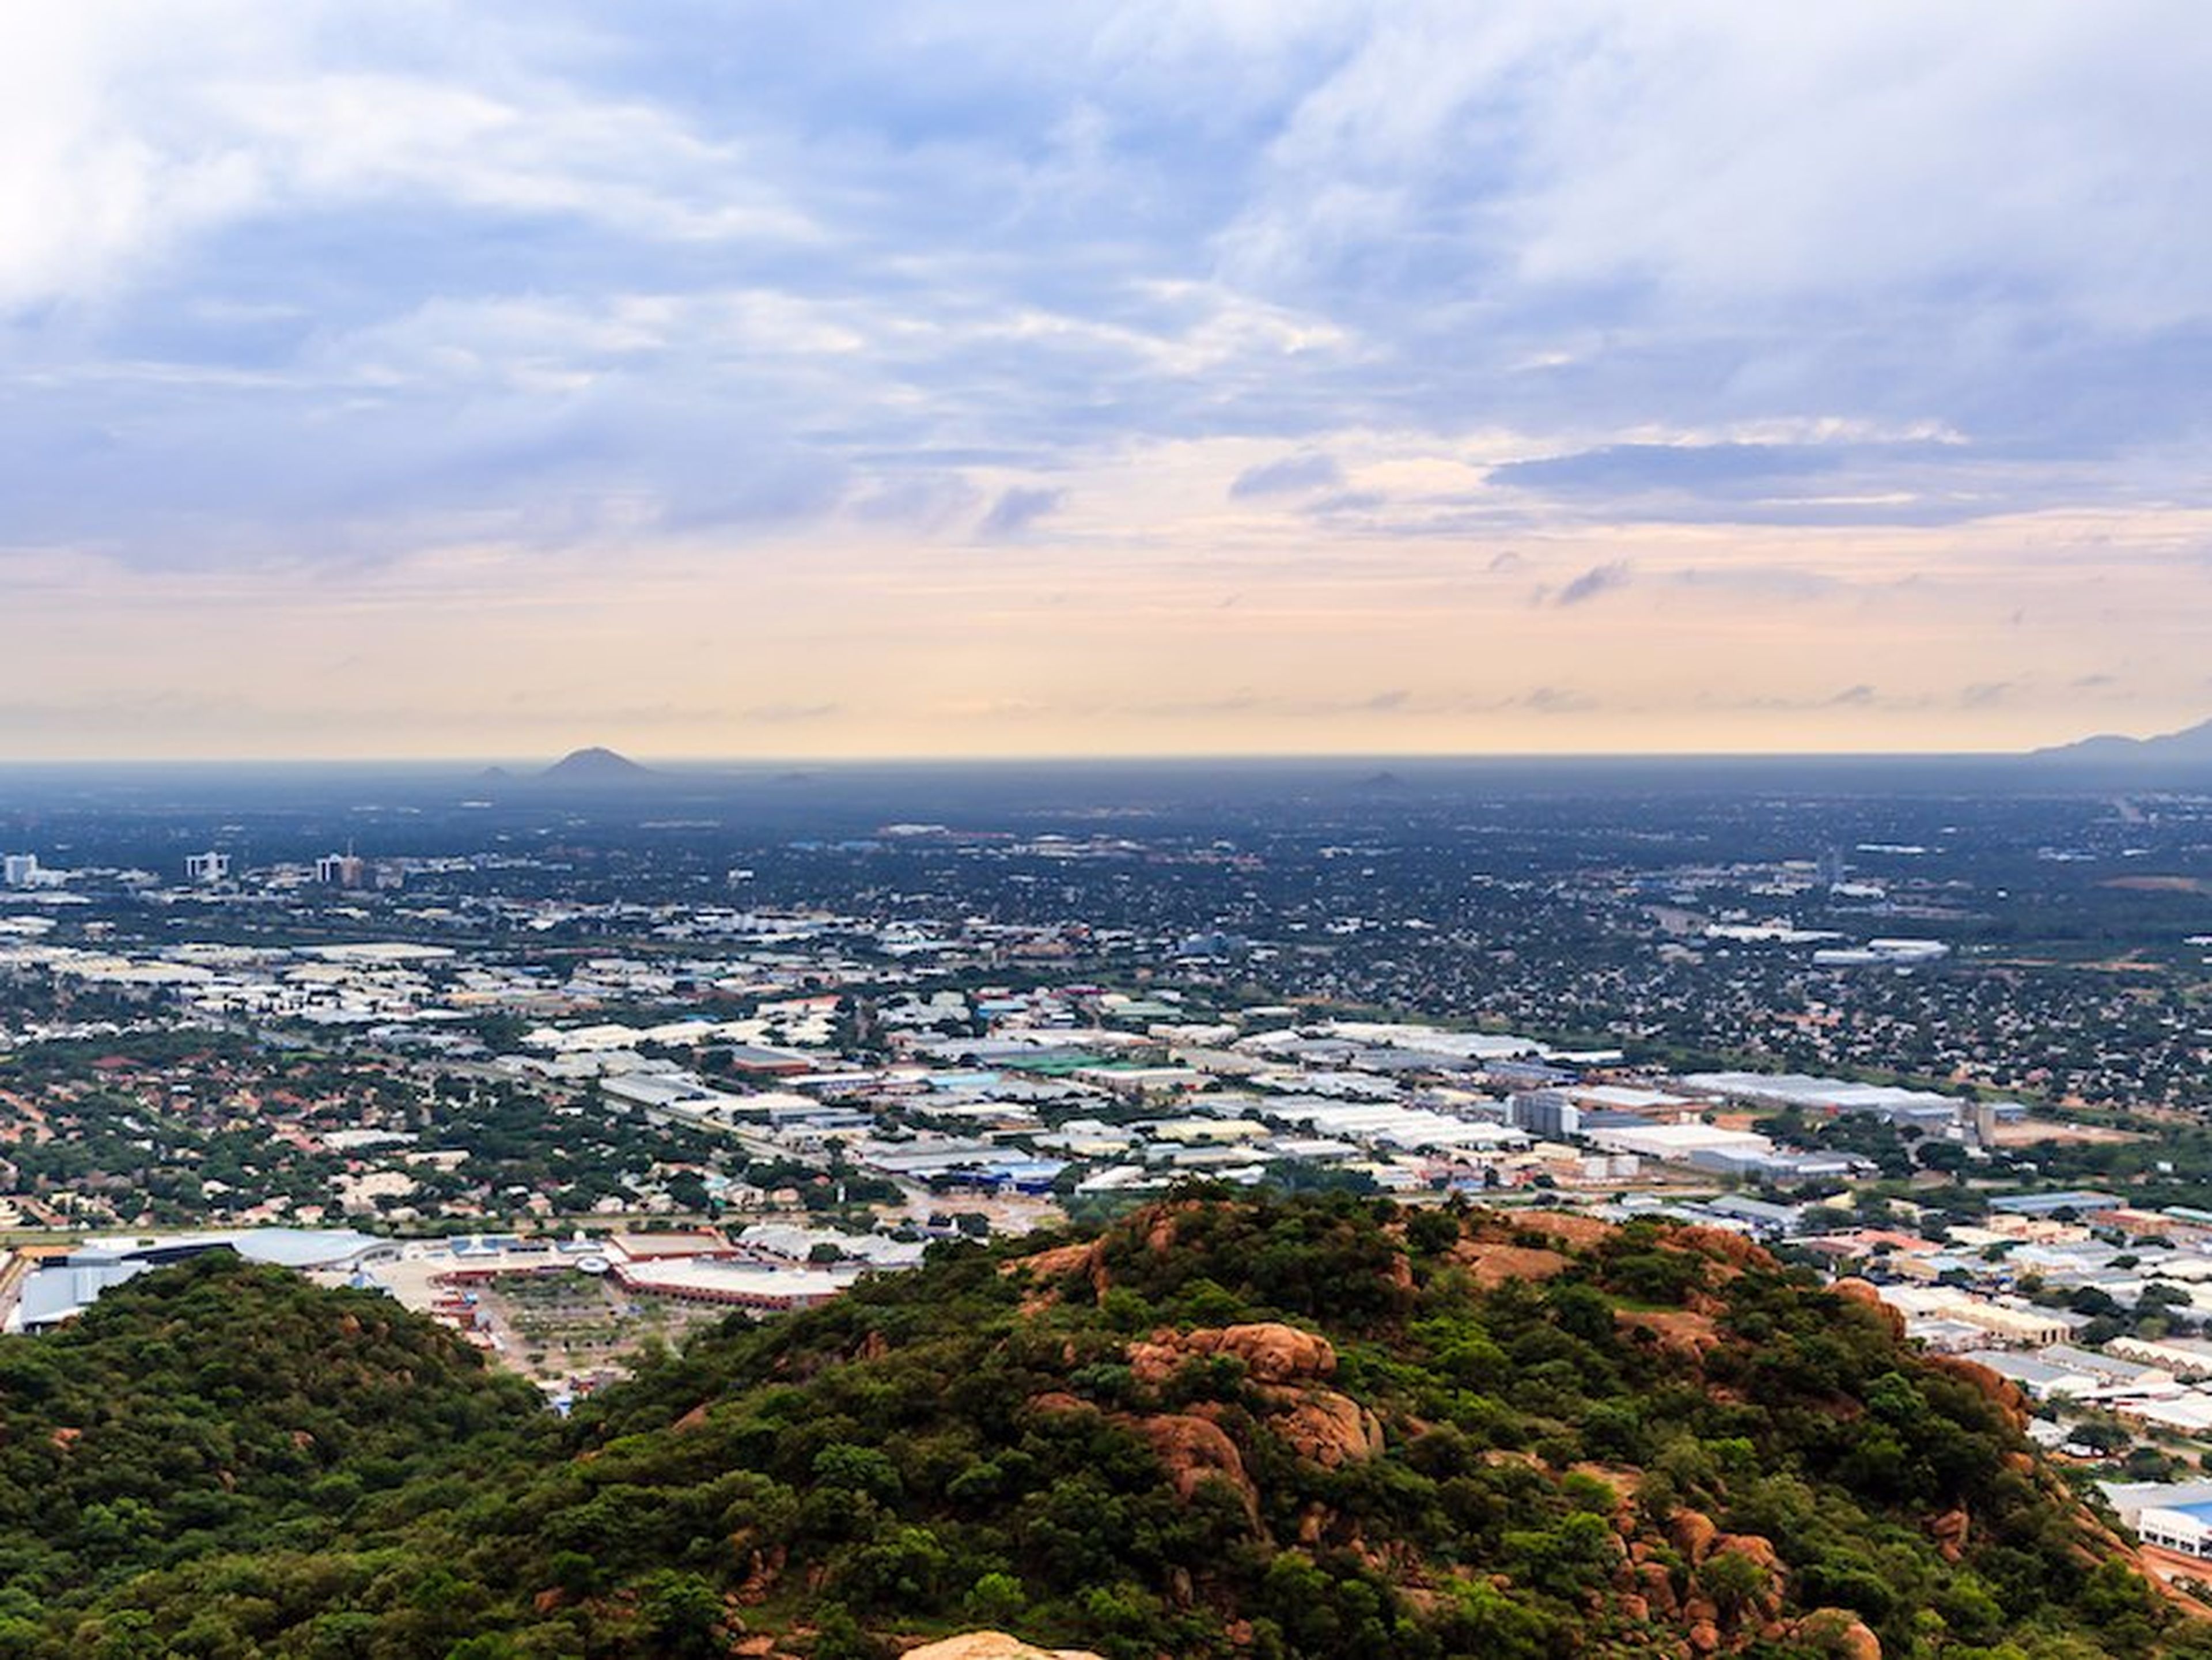 Vista aérea de Gaborone, capital de Botsuana, una de las ciudades que más rápido crece del mundo.